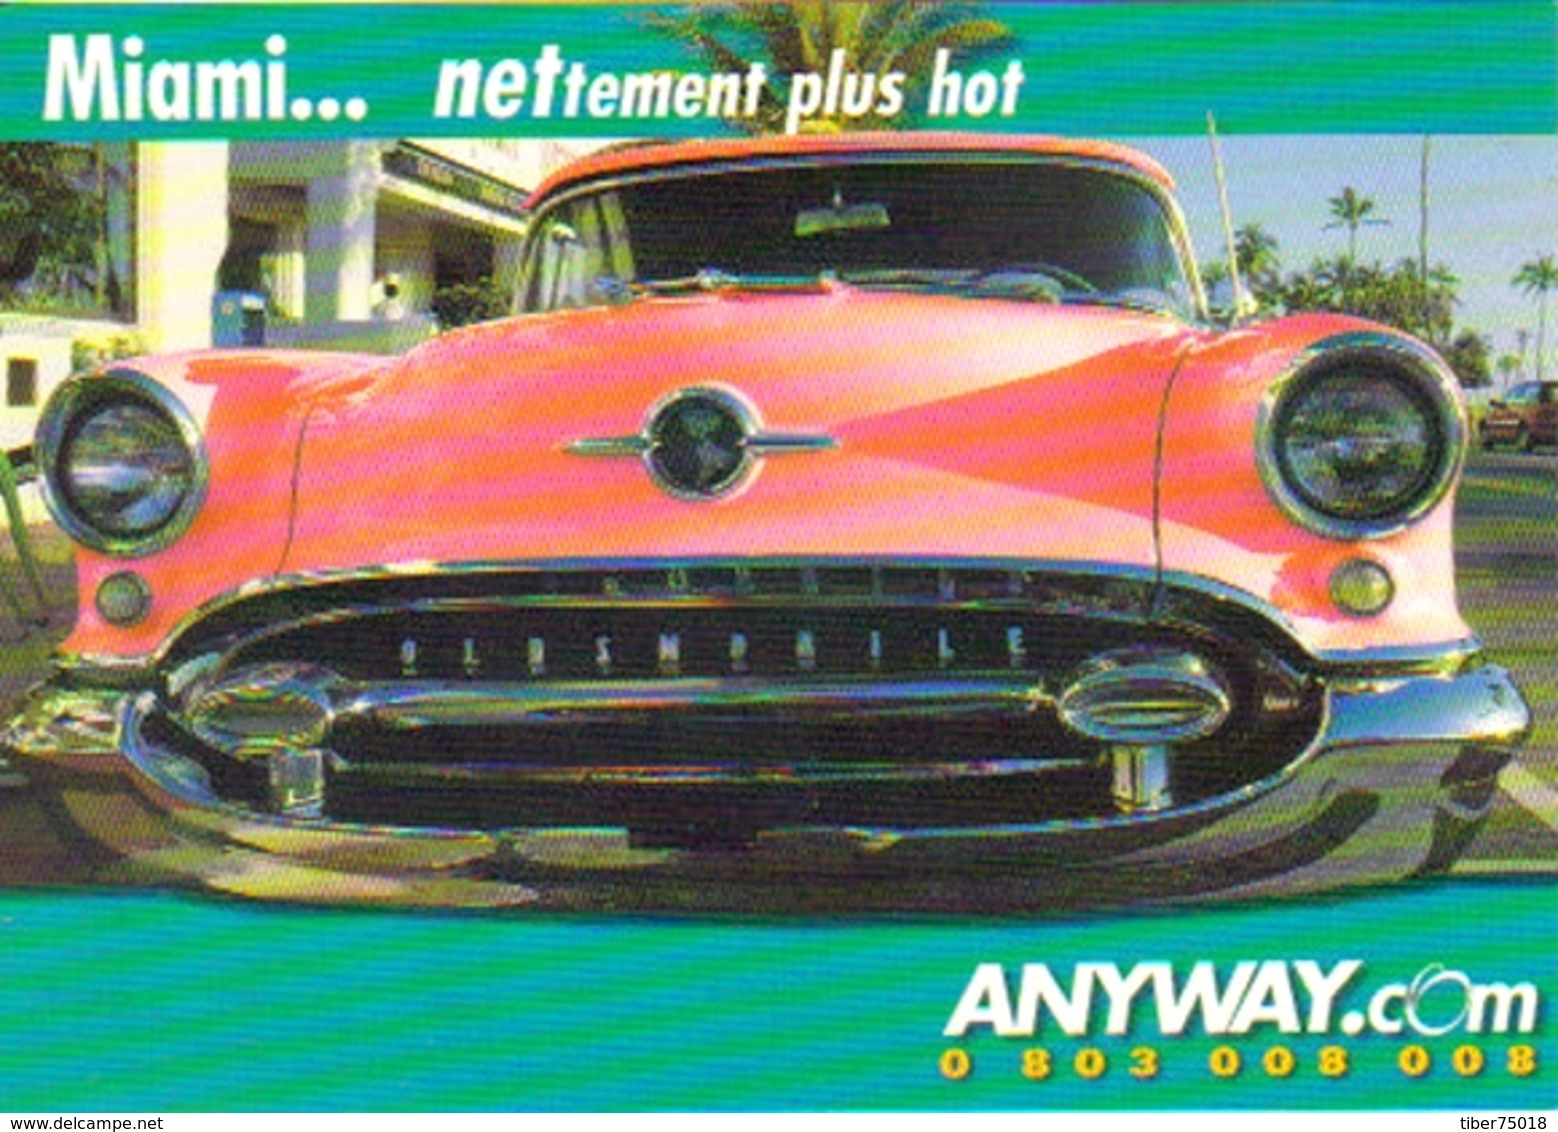 Carte Postale  "Cart'Com" (2000) - Anyway.com - Miami... Nettement Plus Hot (voiture Oldsmobile Rose) - Voitures De Tourisme